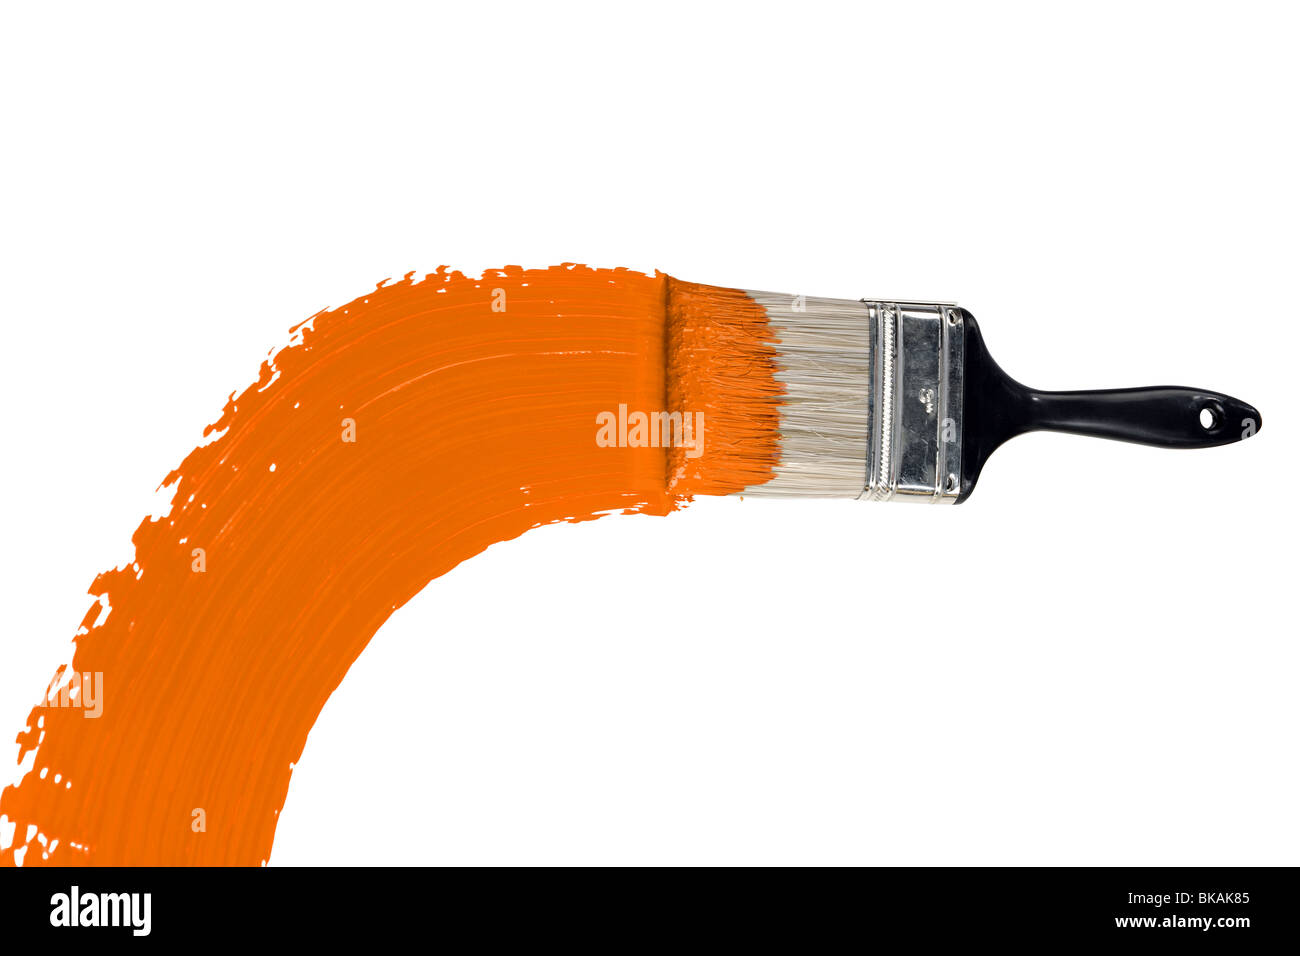 Brush with orange paint isolated over white background Stock Photo